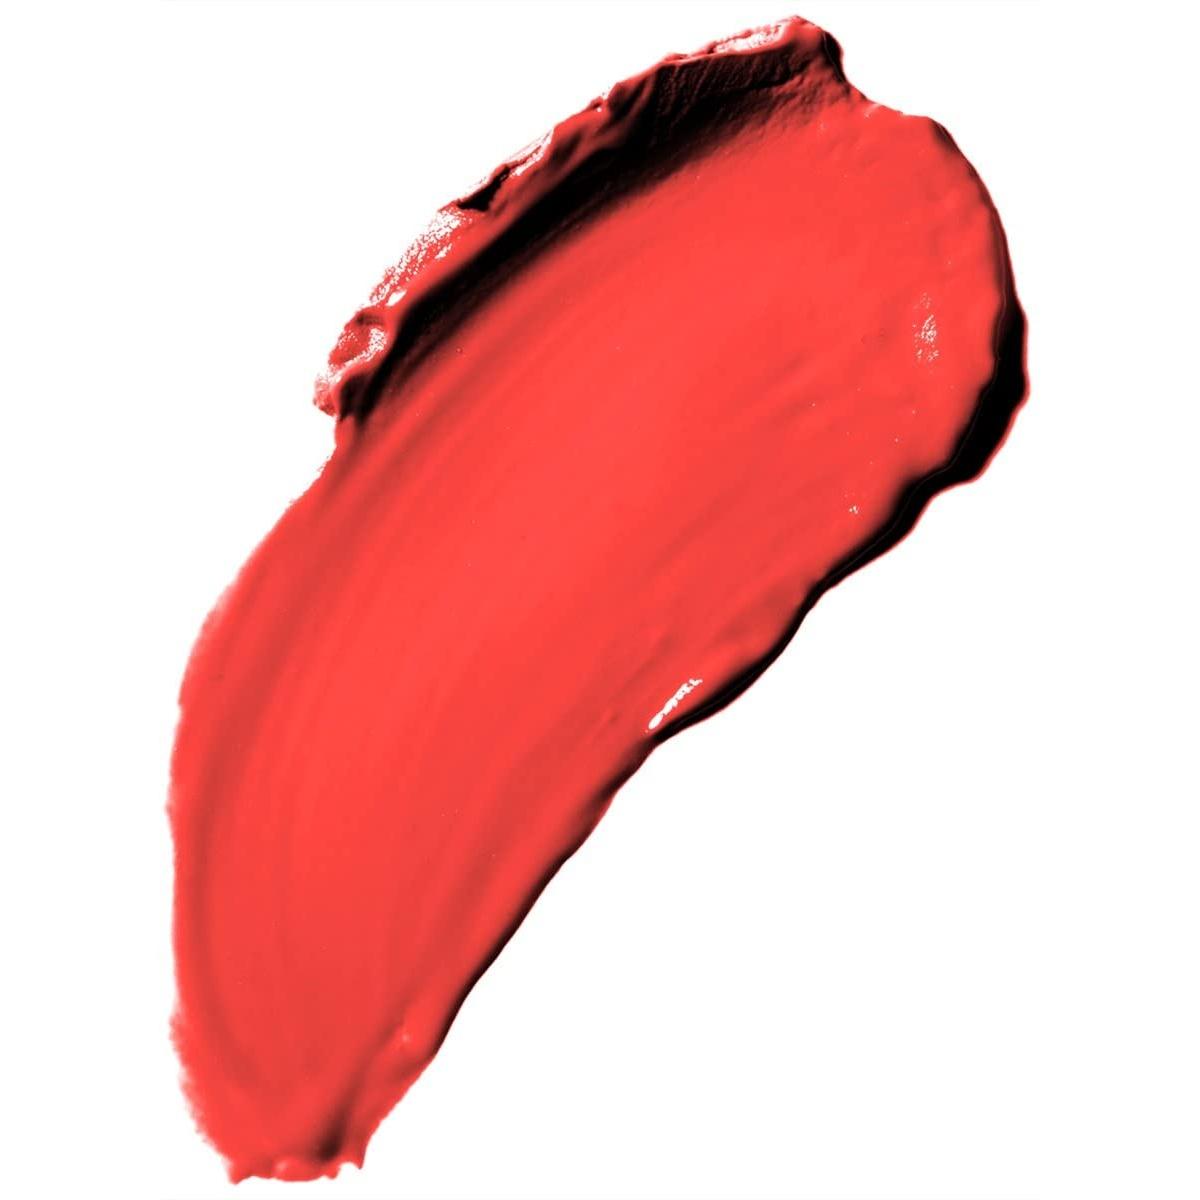 Il rossetto - the lipstick 31 - rosso intenso